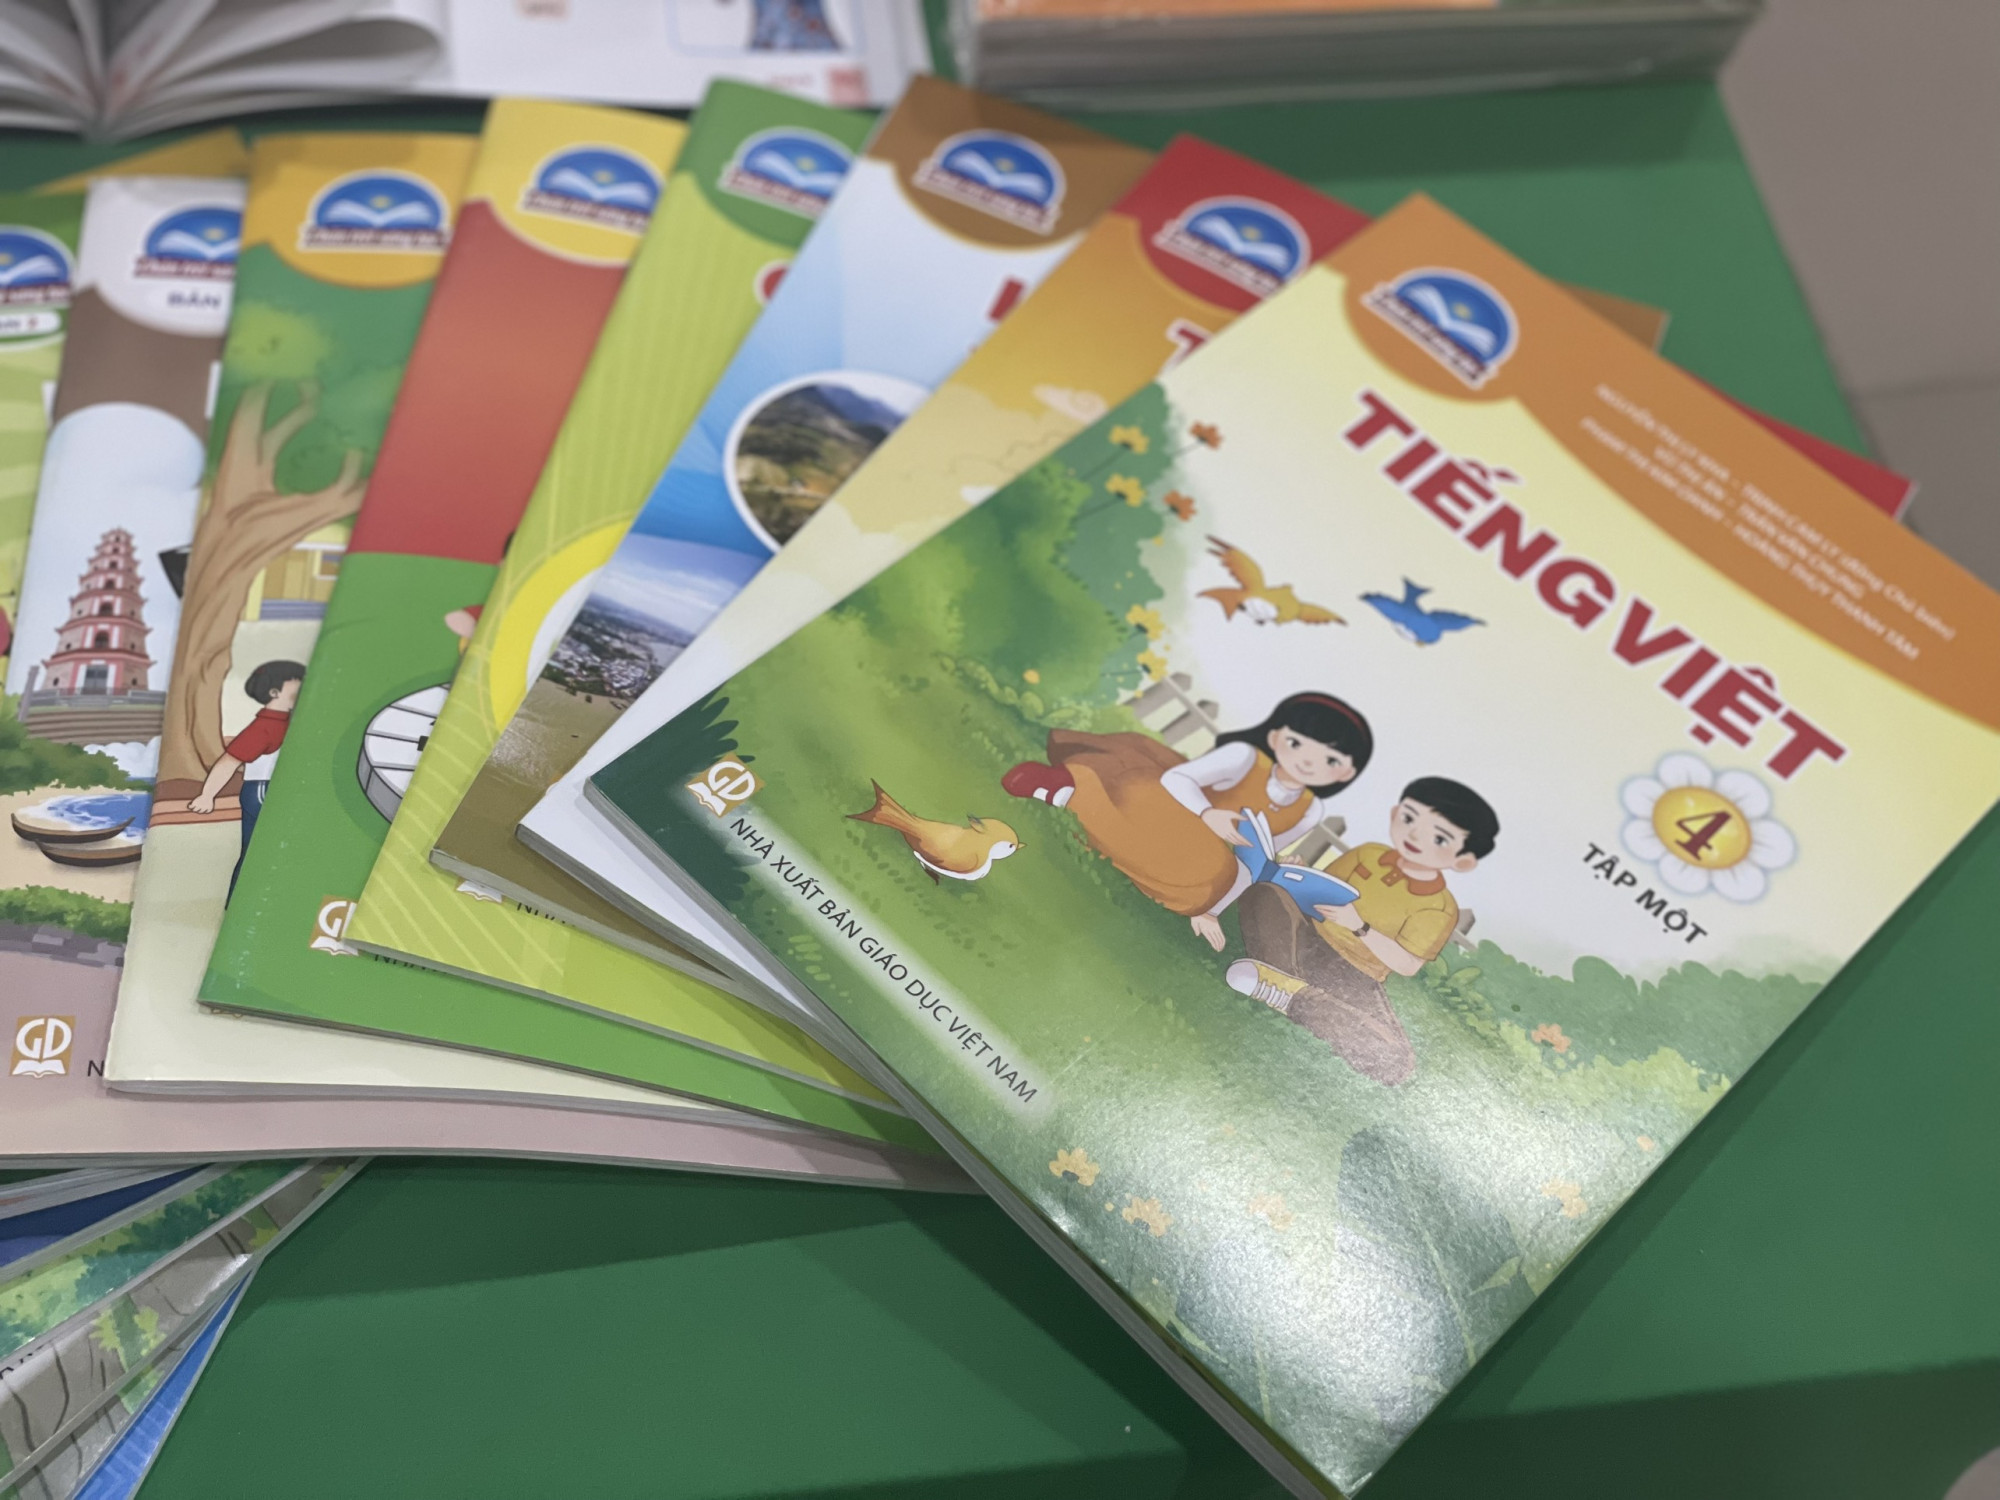 Phó giám đốc Sở GD-ĐT TPHCM Nguyễn Bảo Quốc yêu cầu nhà trường không được bắt buộc phụ huynh học sinh mua sách bài tập, sách tham khảo